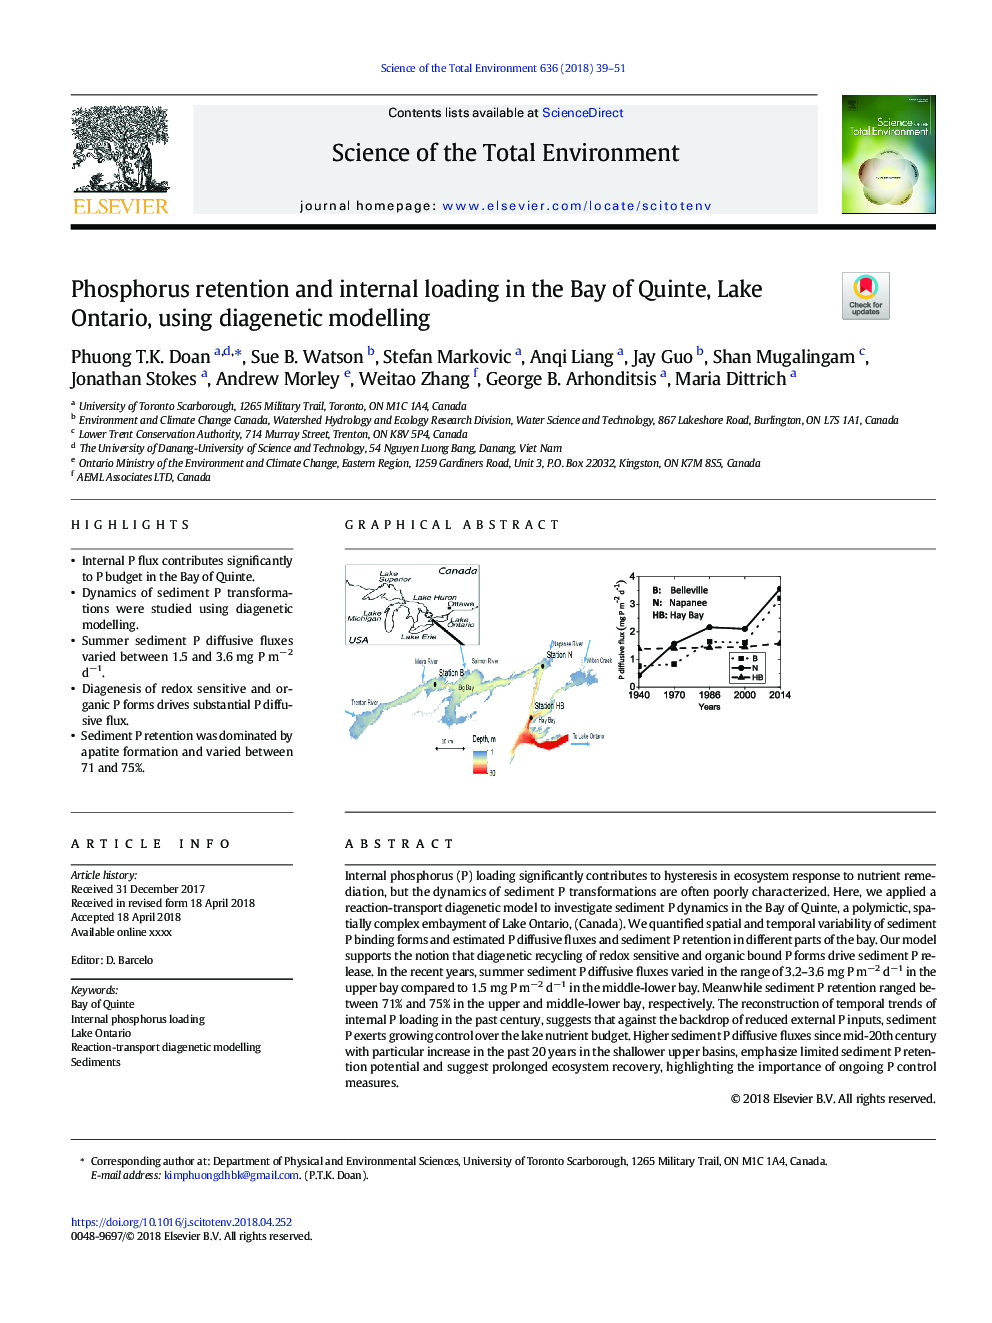 احتباس فسفر و بارگیری داخلی در خلیج کوئینت، دریاچه انتاریو، با استفاده از مدل سازی دیگنتیک 